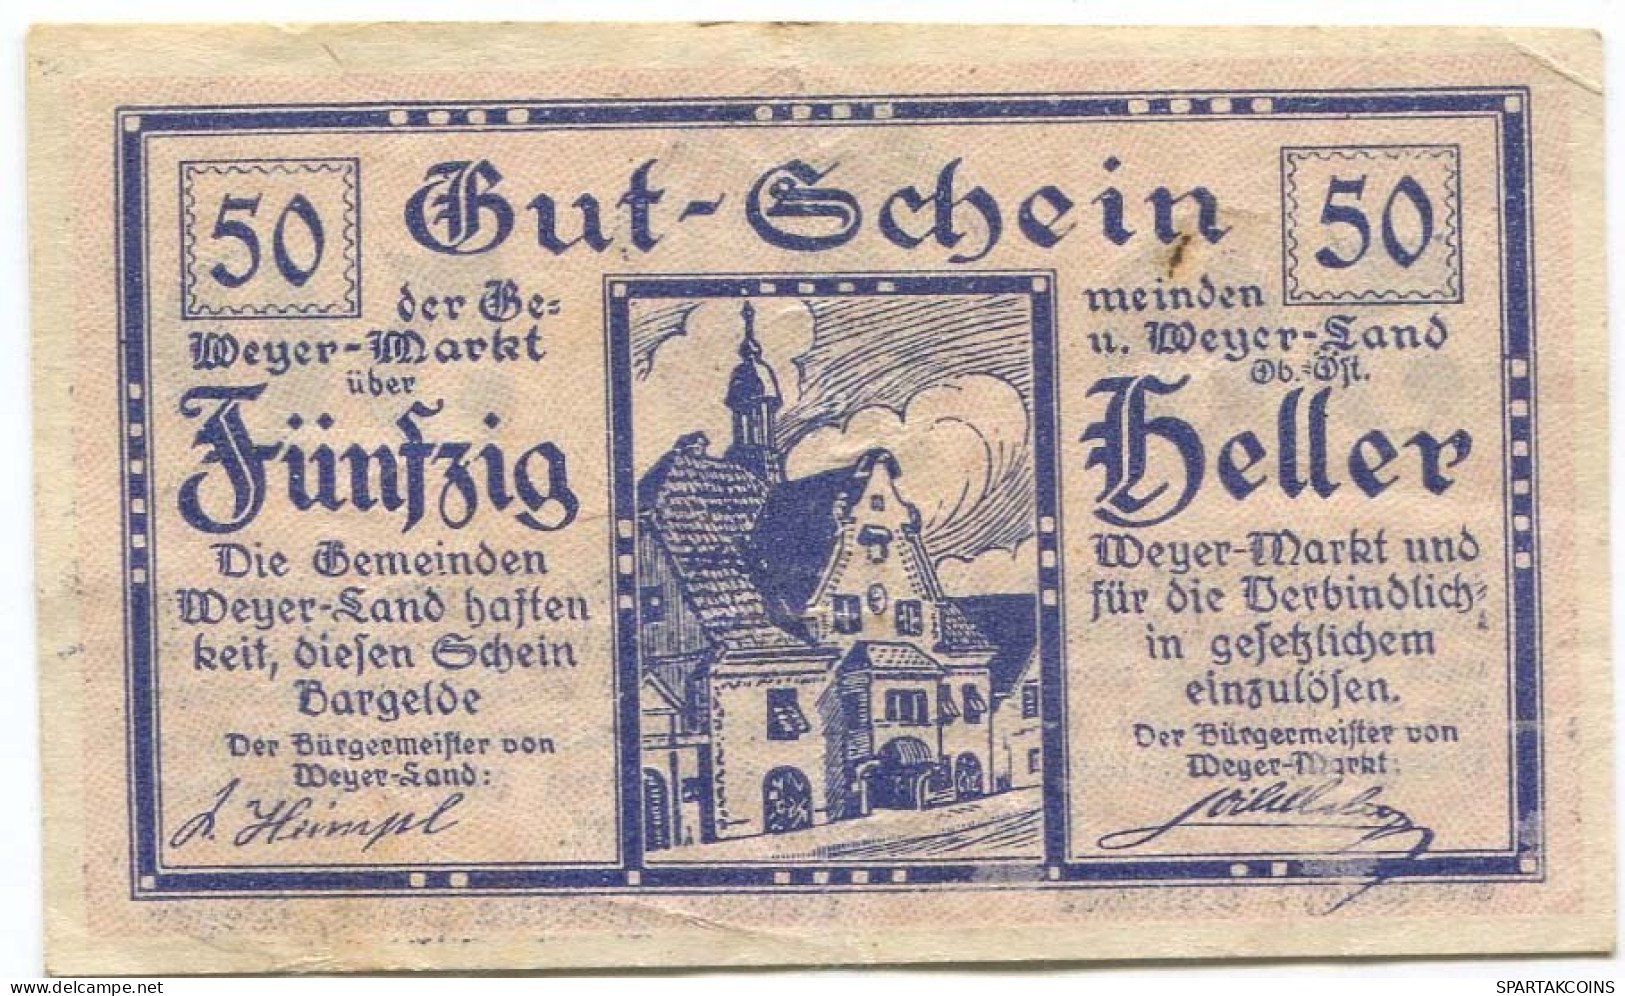 50 HELLER 1920 Stadt WEYER MARKT AND WEYER LAND Oberösterreich Österreich Notgeld Papiergeld Banknote #PL762 - [11] Lokale Uitgaven